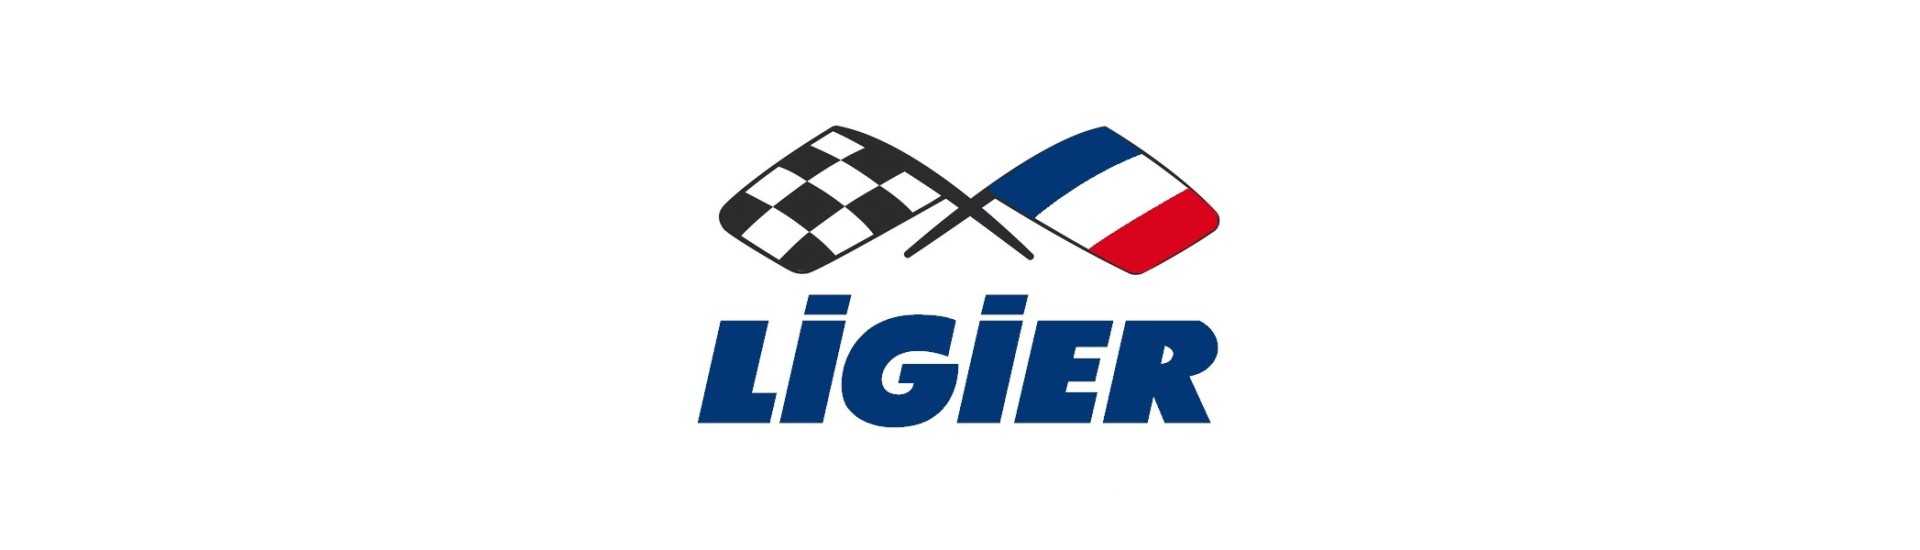 Parrucchiere congiunto al miglior prezzo per auto senza permesso Ligier